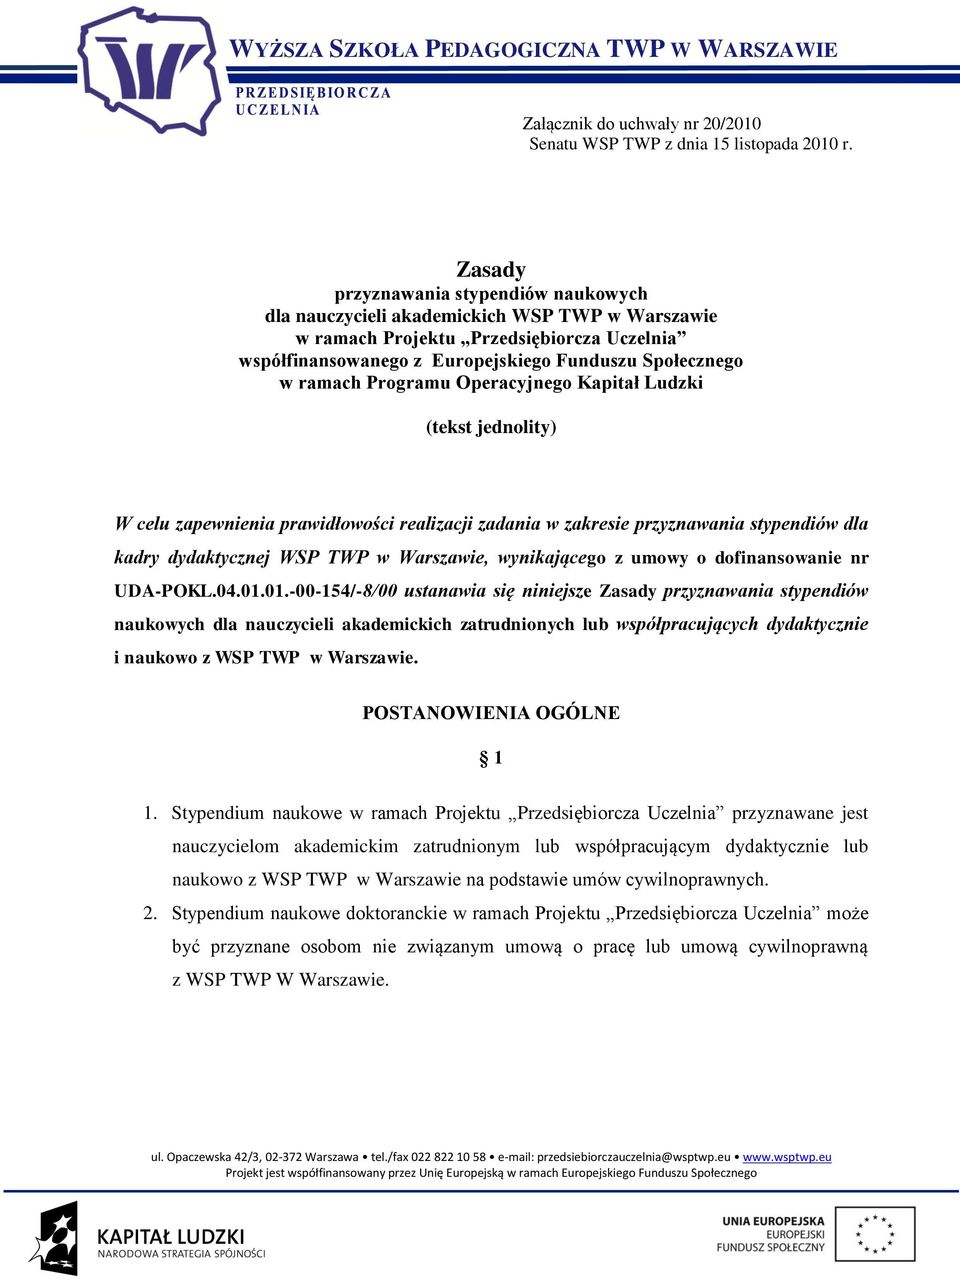 Programu Operacyjnego Kapitał Ludzki (tekst jednolity) W celu zapewnienia prawidłowości realizacji zadania w zakresie przyznawania stypendiów dla kadry dydaktycznej WSP TWP w Warszawie, wynikającego